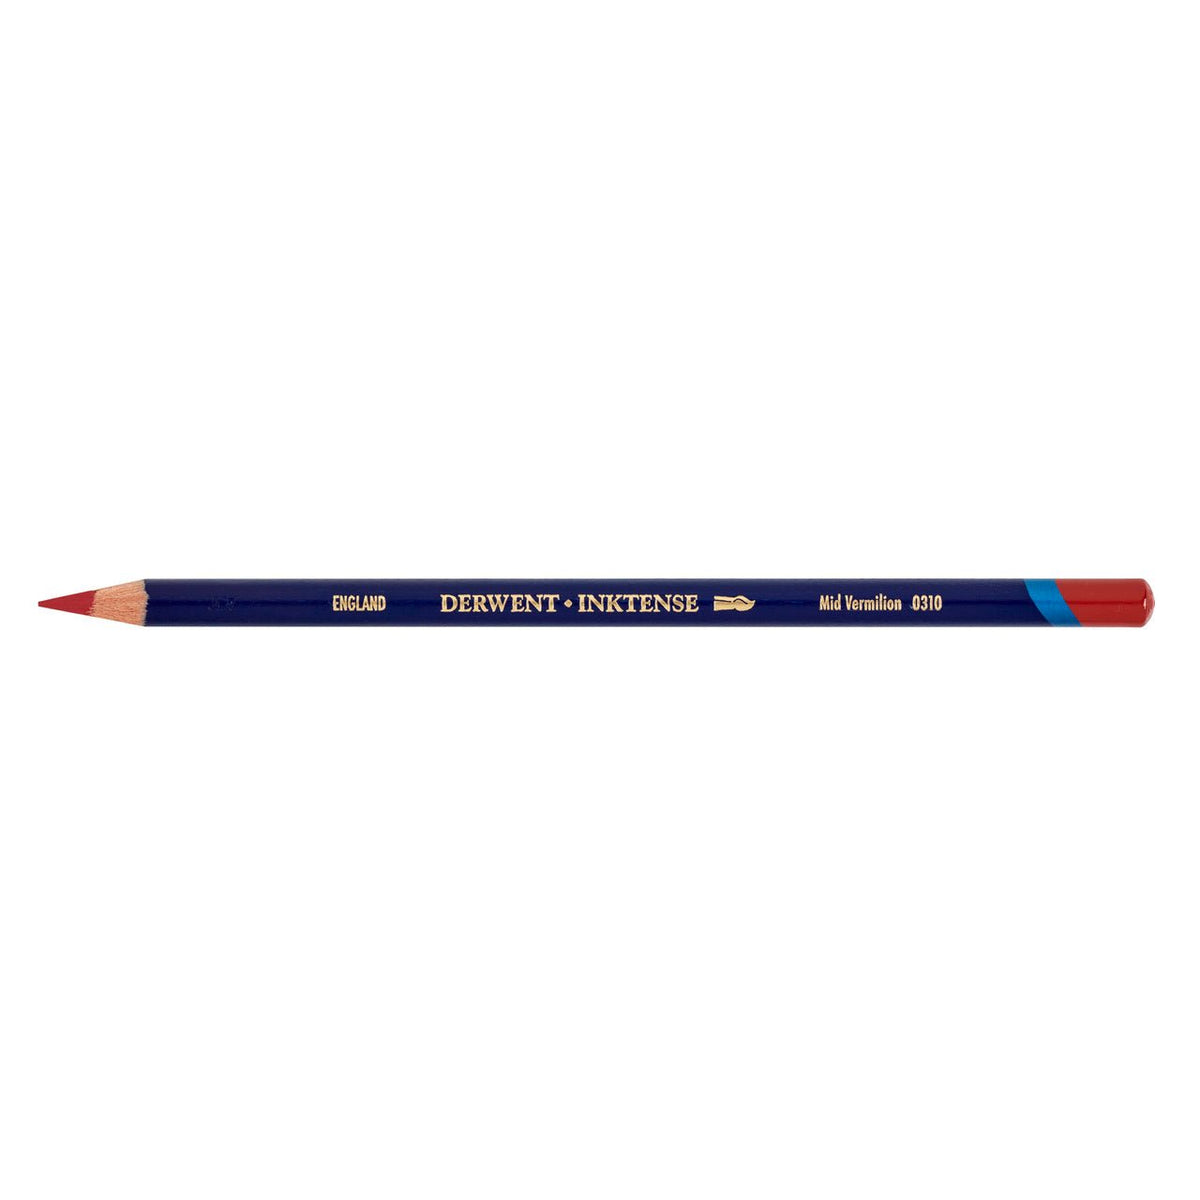 Derwent Inktense Pencil Mid Vermillion - merriartist.com